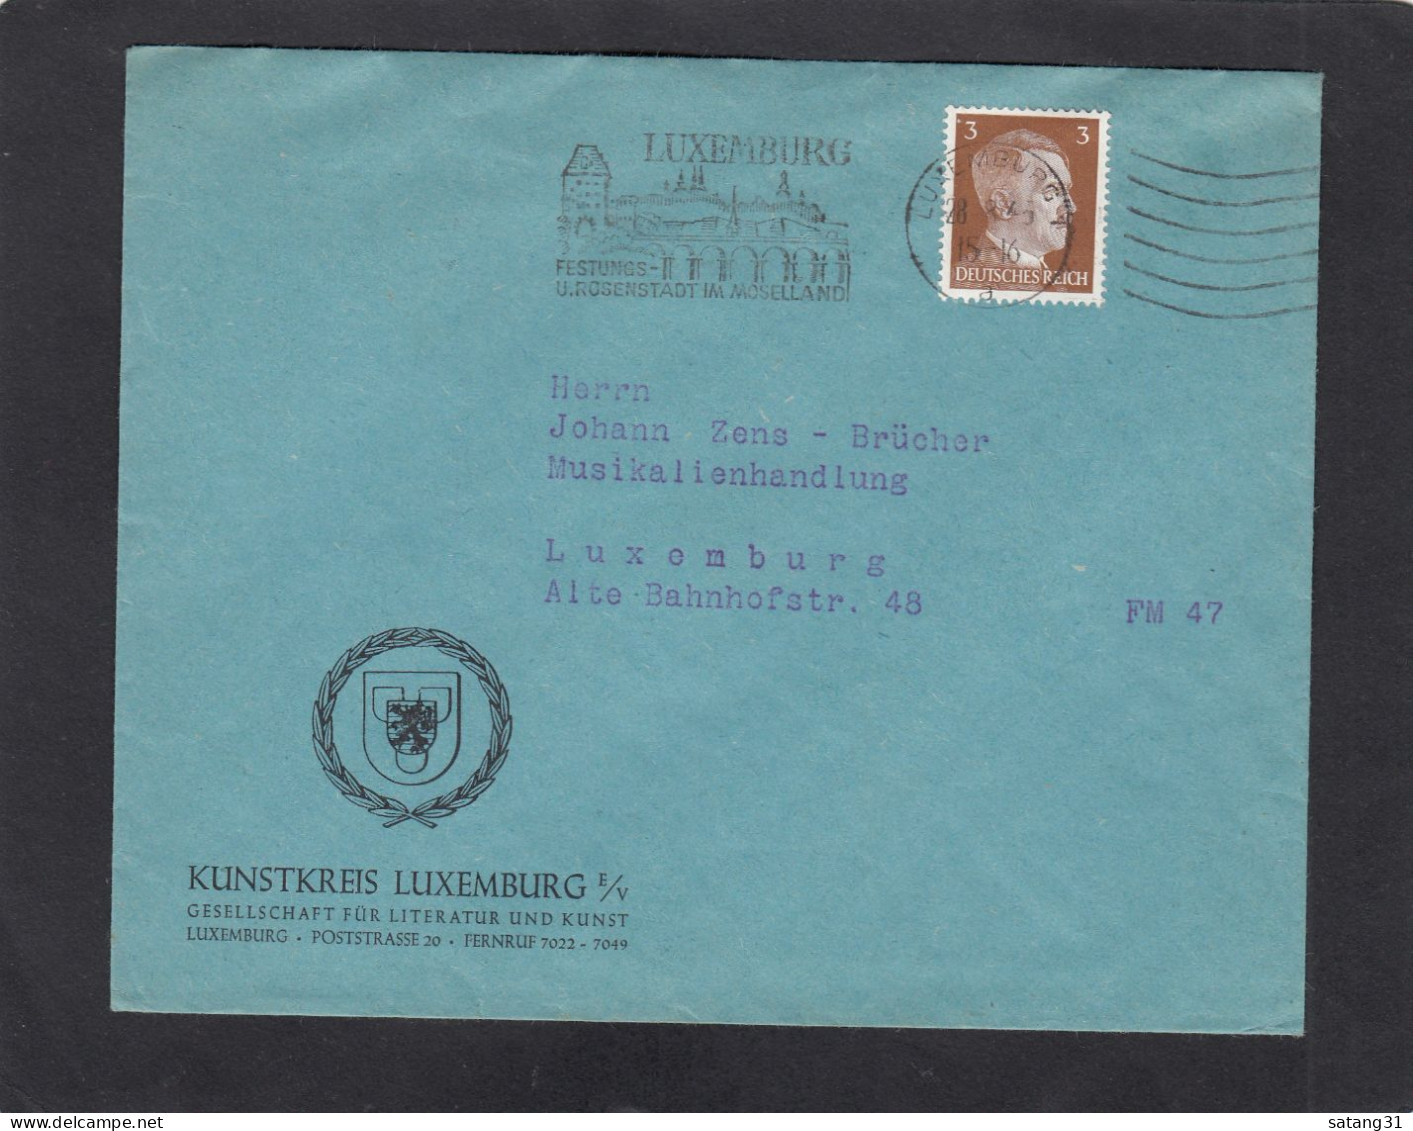 KUNSTKREIS LUXEMBURG,GESELLSCHAFT FÜR LITTERATUR UND KUNST,LUXEMBURG. - 1940-1944 Occupation Allemande